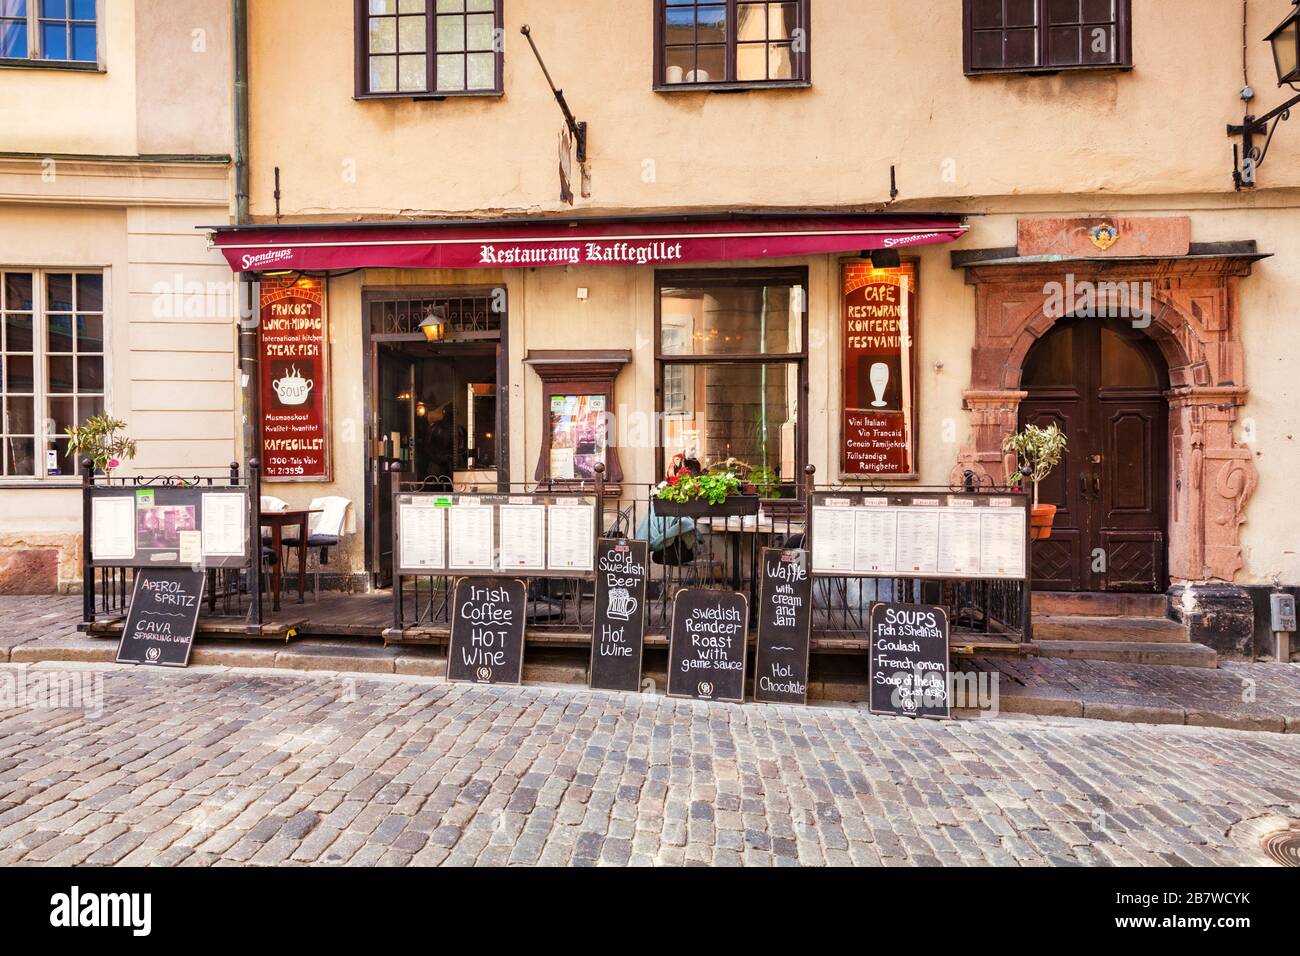 16 settembre 2018: Stoccolma, Svezia - Ristorante Kaffegillet, Gamla Stan, con lavagne esterne sul marciapiede con menu. Foto Stock